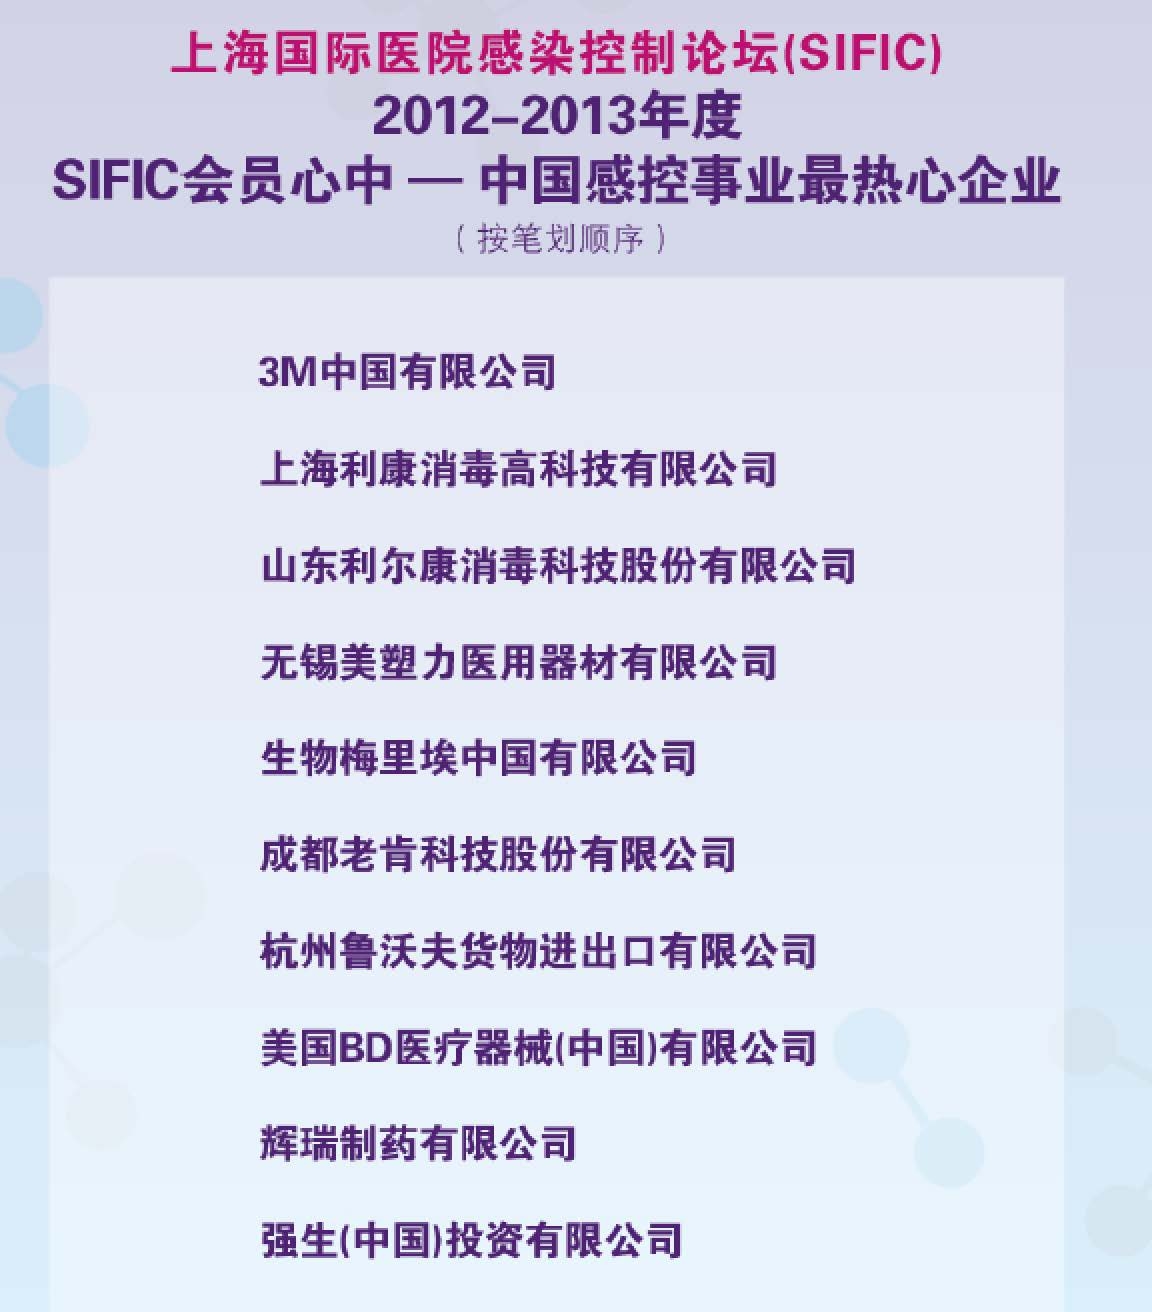 SIFIC会员心中-中国感控事业最热心企业（2013-2014）.jpg